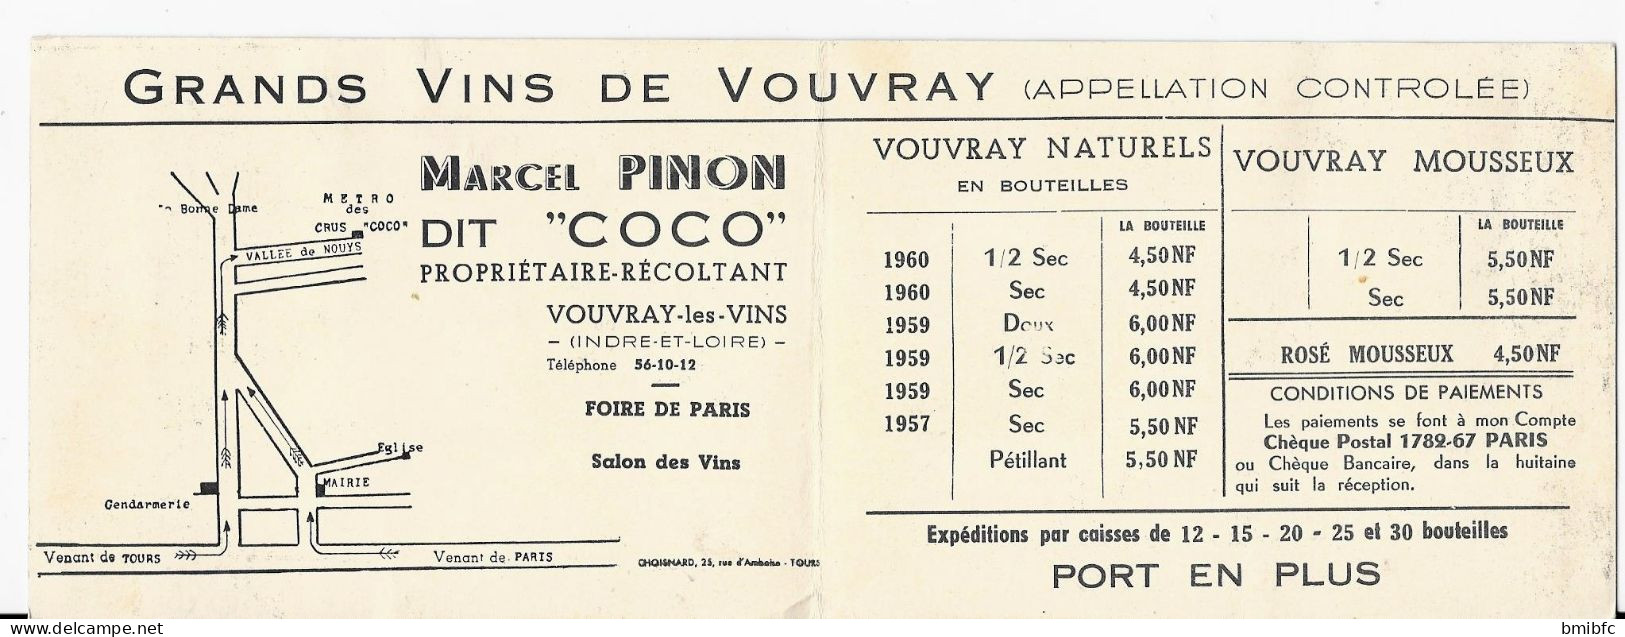 MÉTRO Des CRUS COCO -  Grand Vins De VOUVRAY - Marcel PINON Dit " COCO " Propriétaire-Récoltant à Vouvray Les Vins - Landbouw